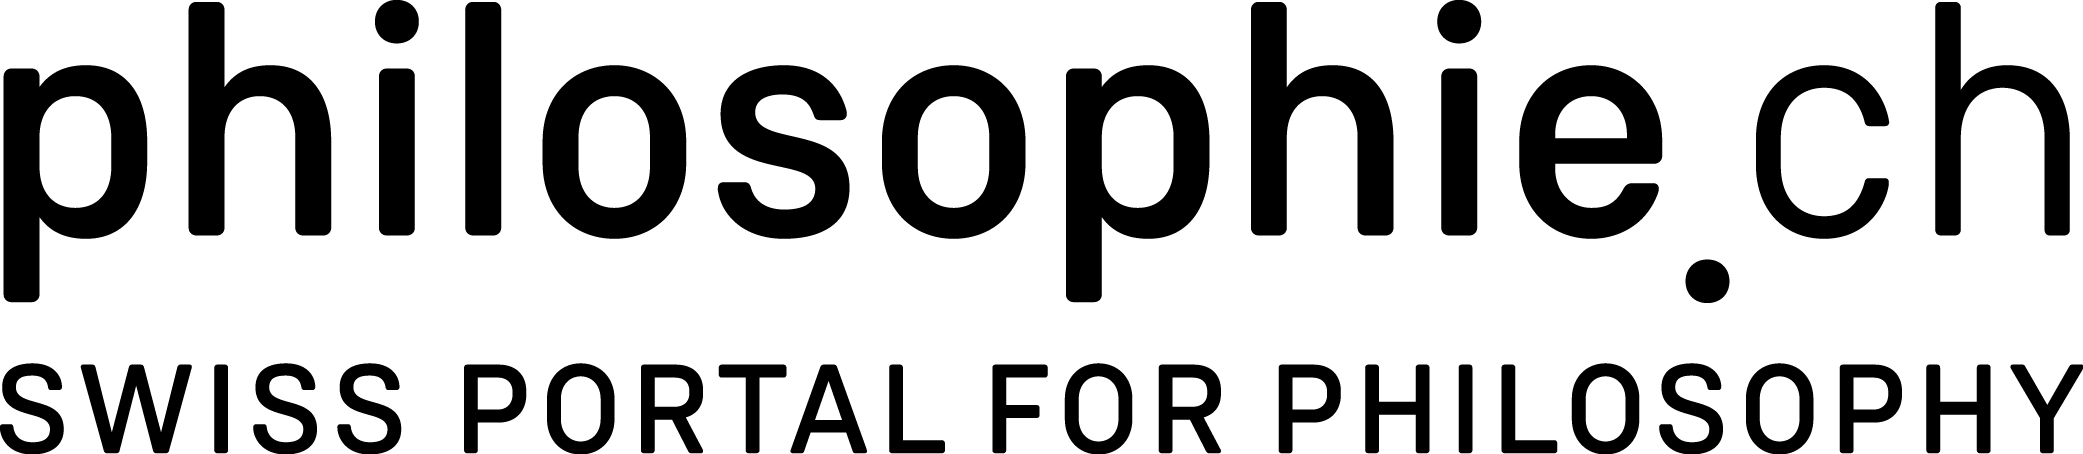 Logo underline philosophie ch 1